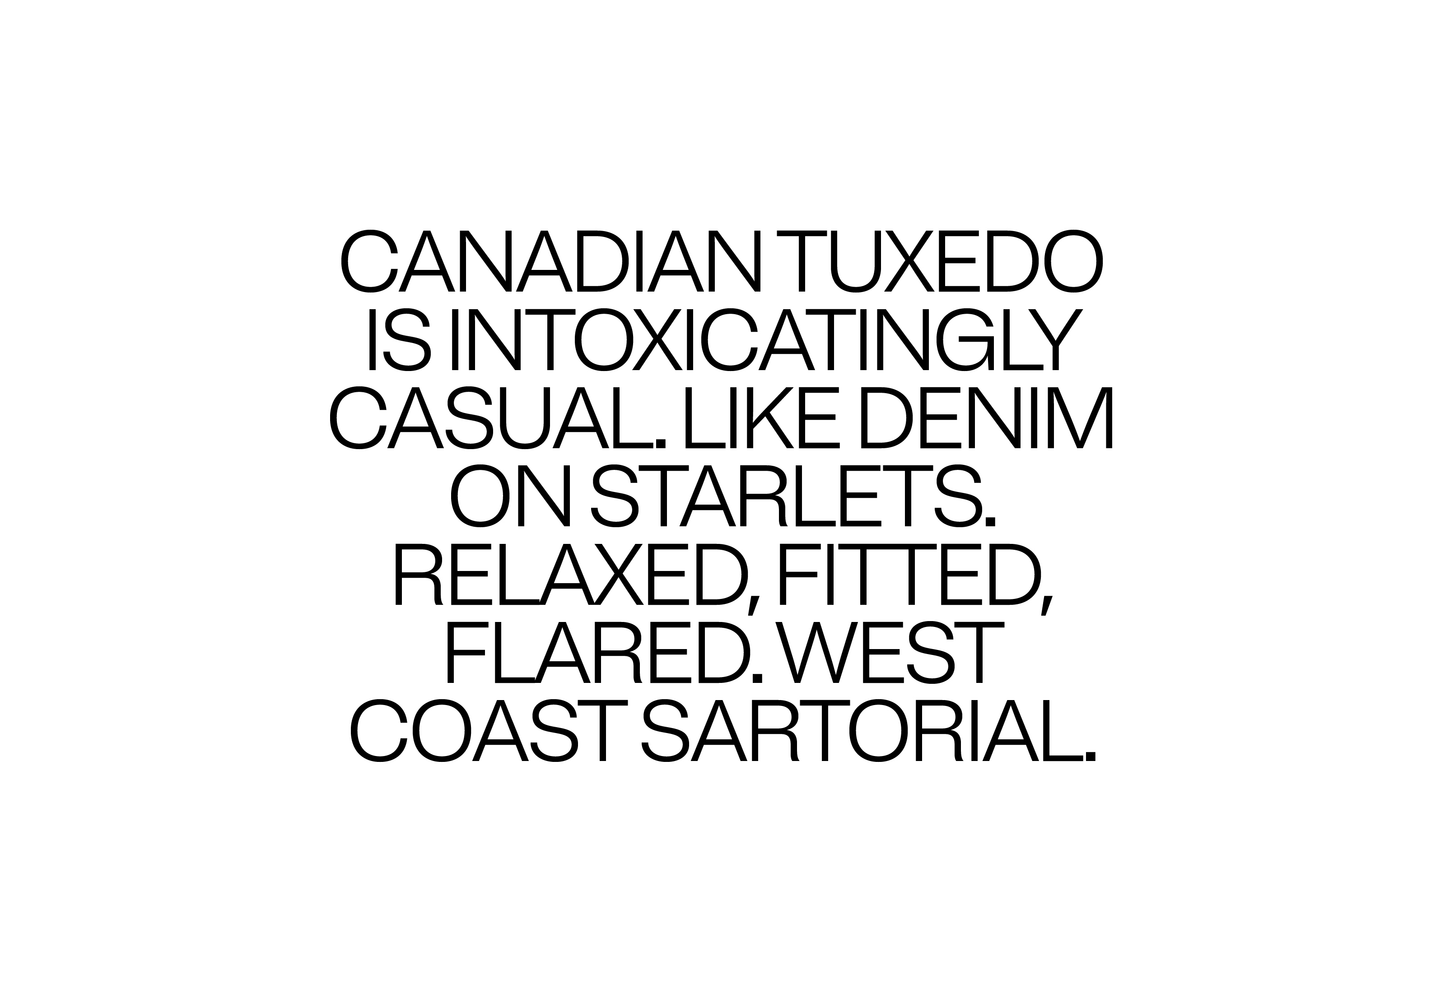 Canadian Tuxedo is intoxicatingly casual. 